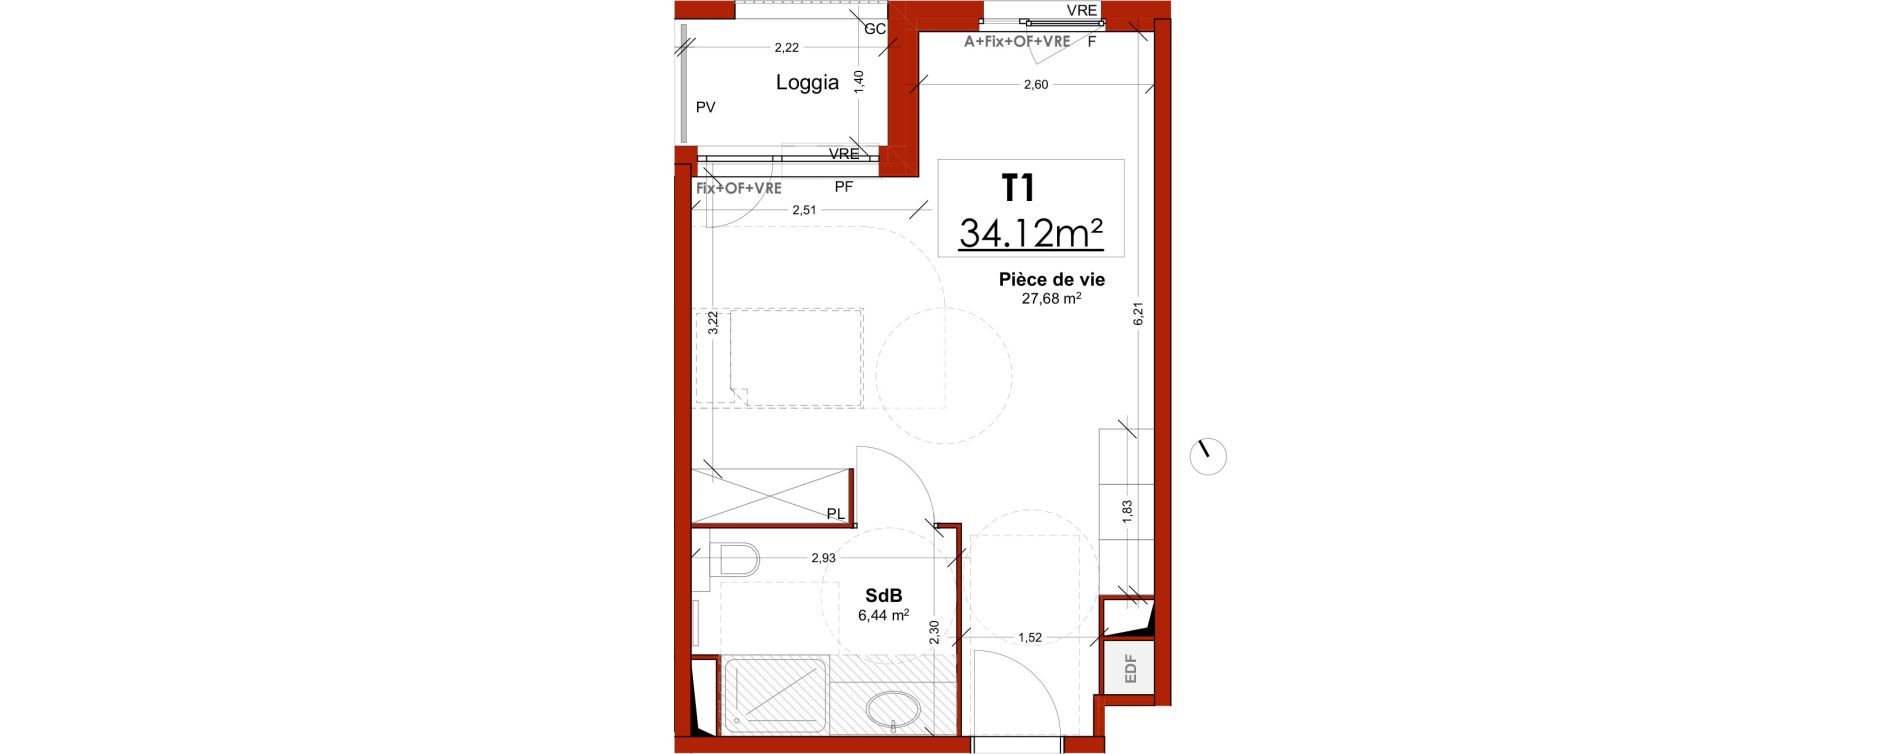 Appartement T1 meubl&eacute; de 34,12 m2 &agrave; Lens Centre